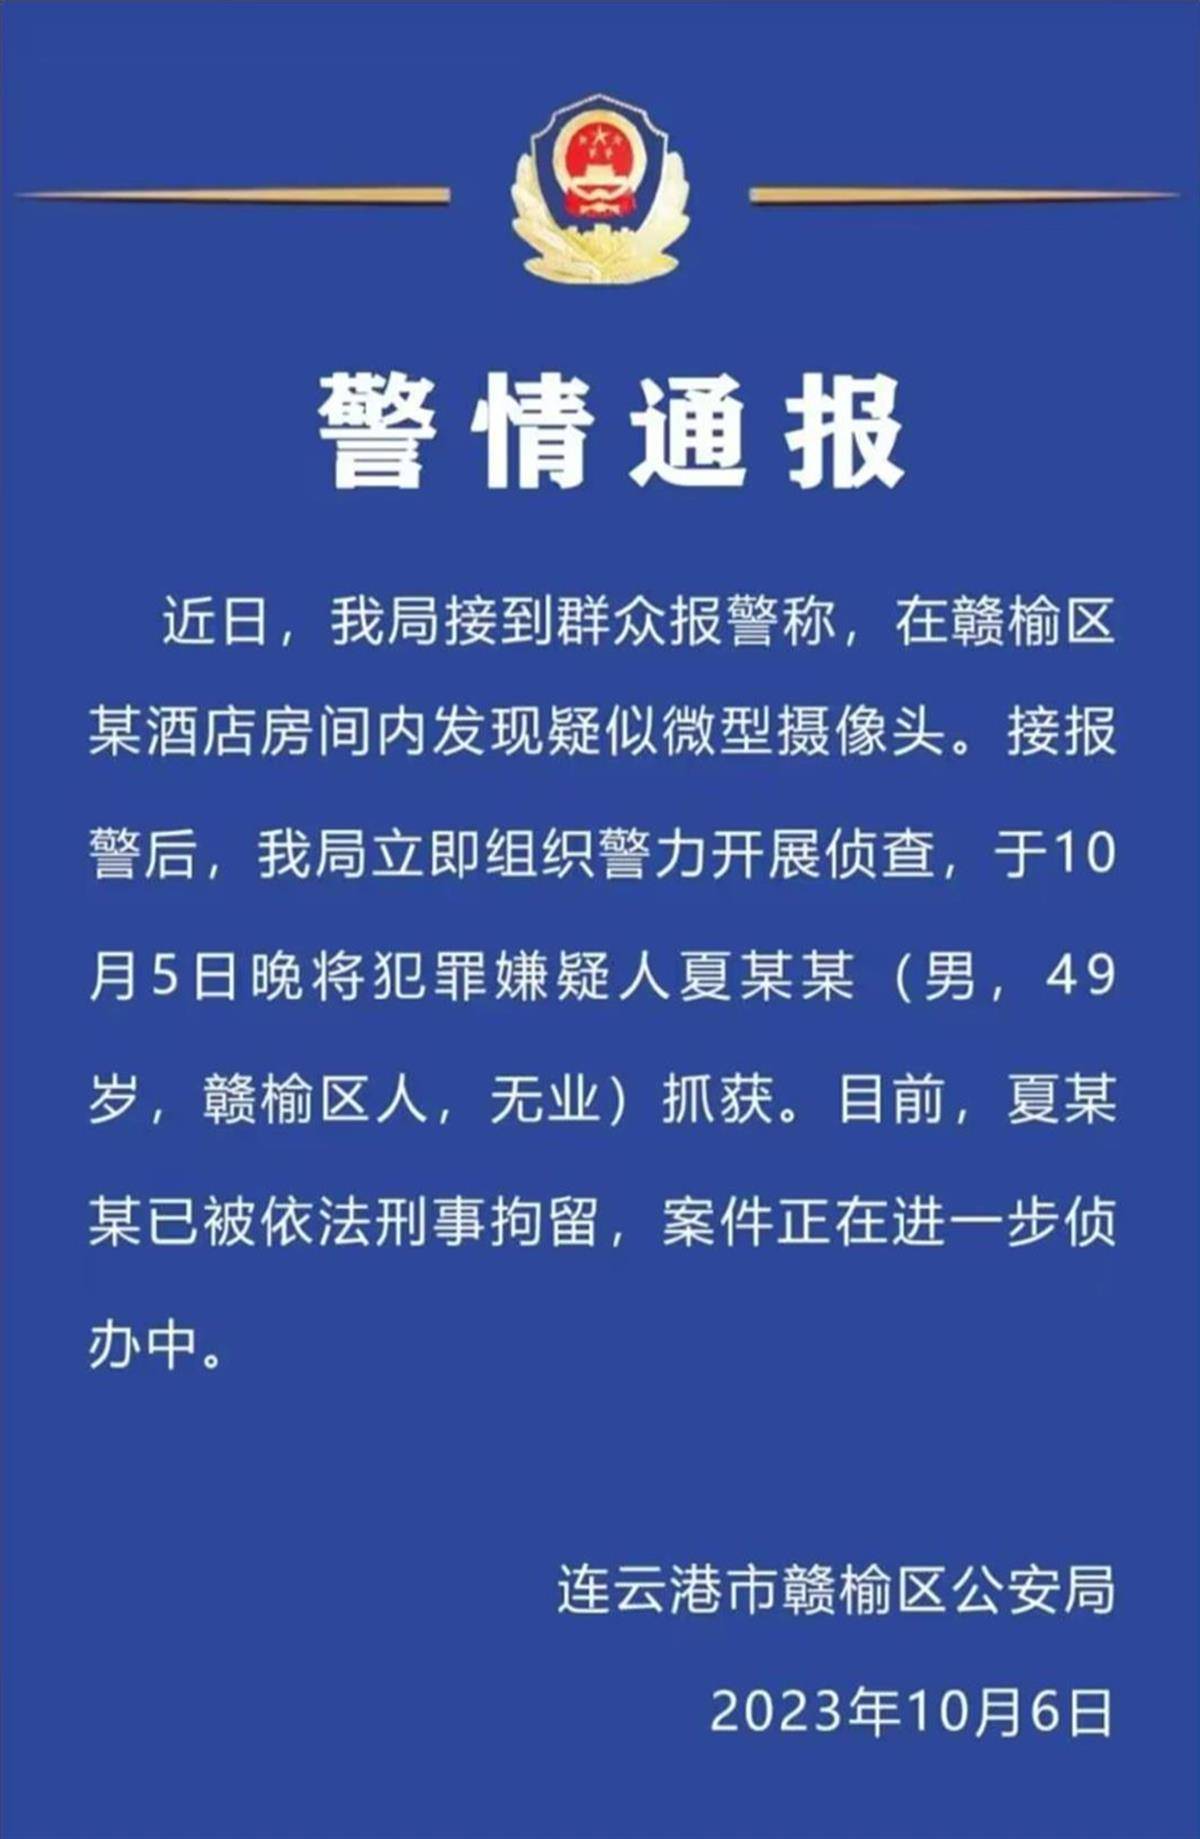 “连云港一酒店房间惊现摄像头”事件犯罪嫌疑人被刑拘，酒店删除此前发声视频，受害者回应